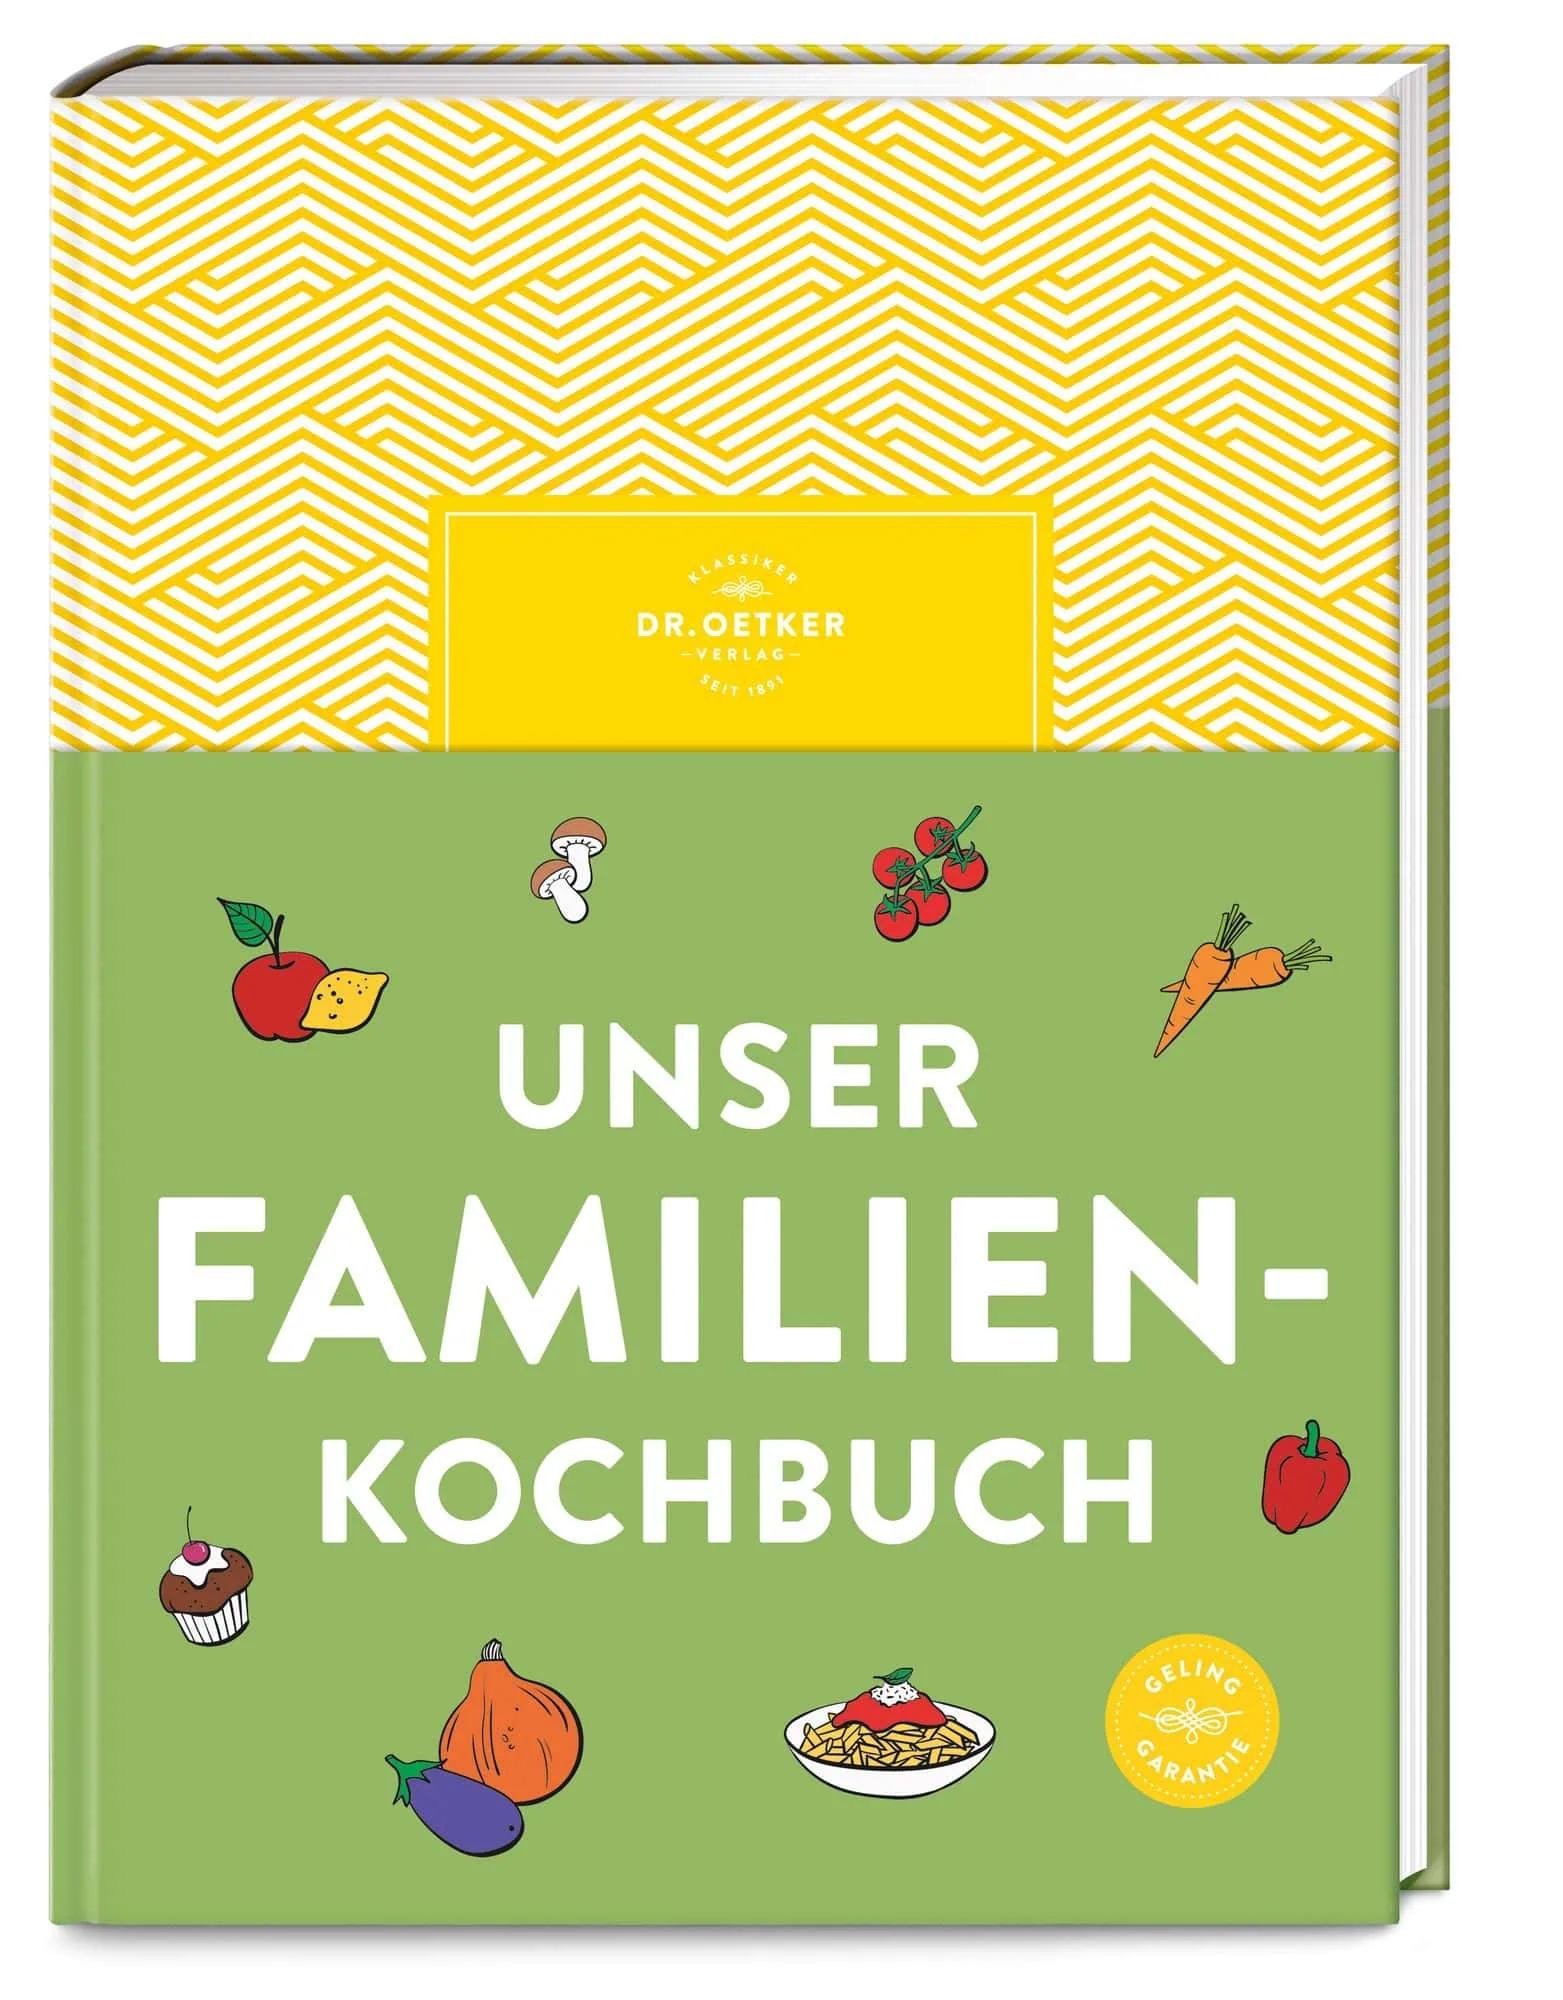 Gemüsereis Und Spinatbulgur Aus Unser Familienkochbuch Vom Dr. Oetker Verlag // Himbeer